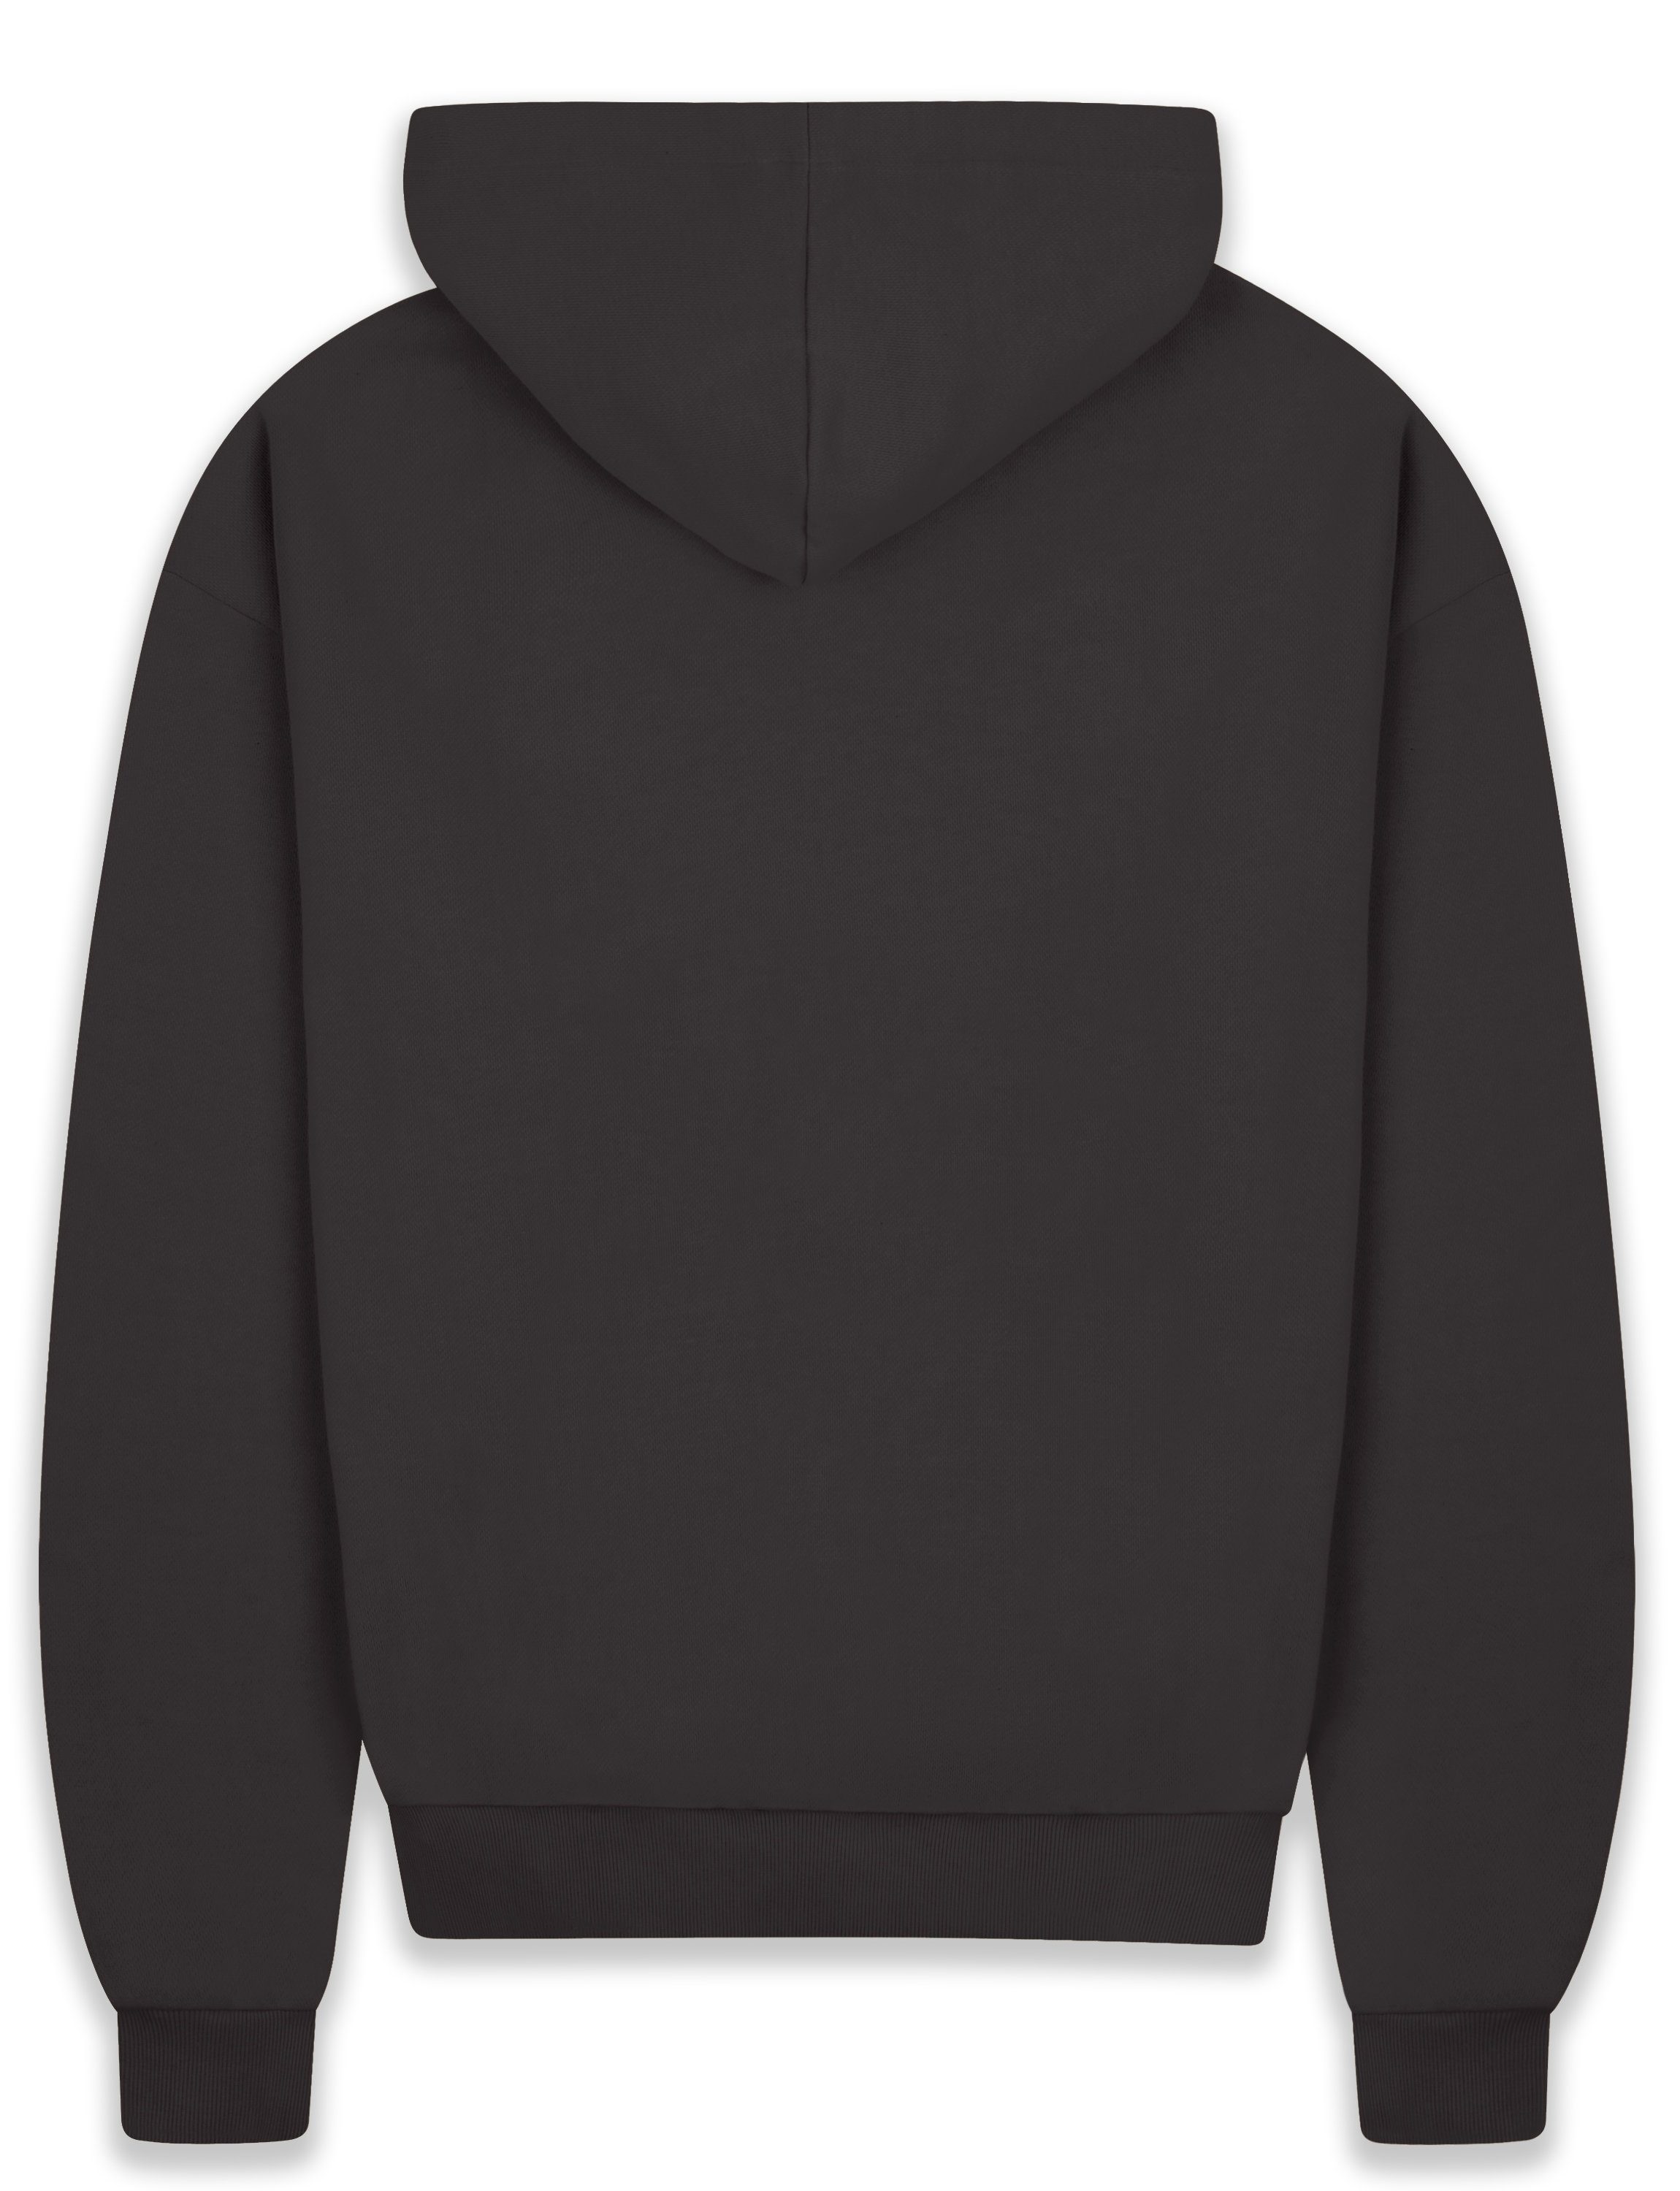 Black Hoodie GSM BR-H-1 Hoodie Heavy Herren Herren Washed Dropsize Oversize 430 Kapuzen-Pullover Sweater